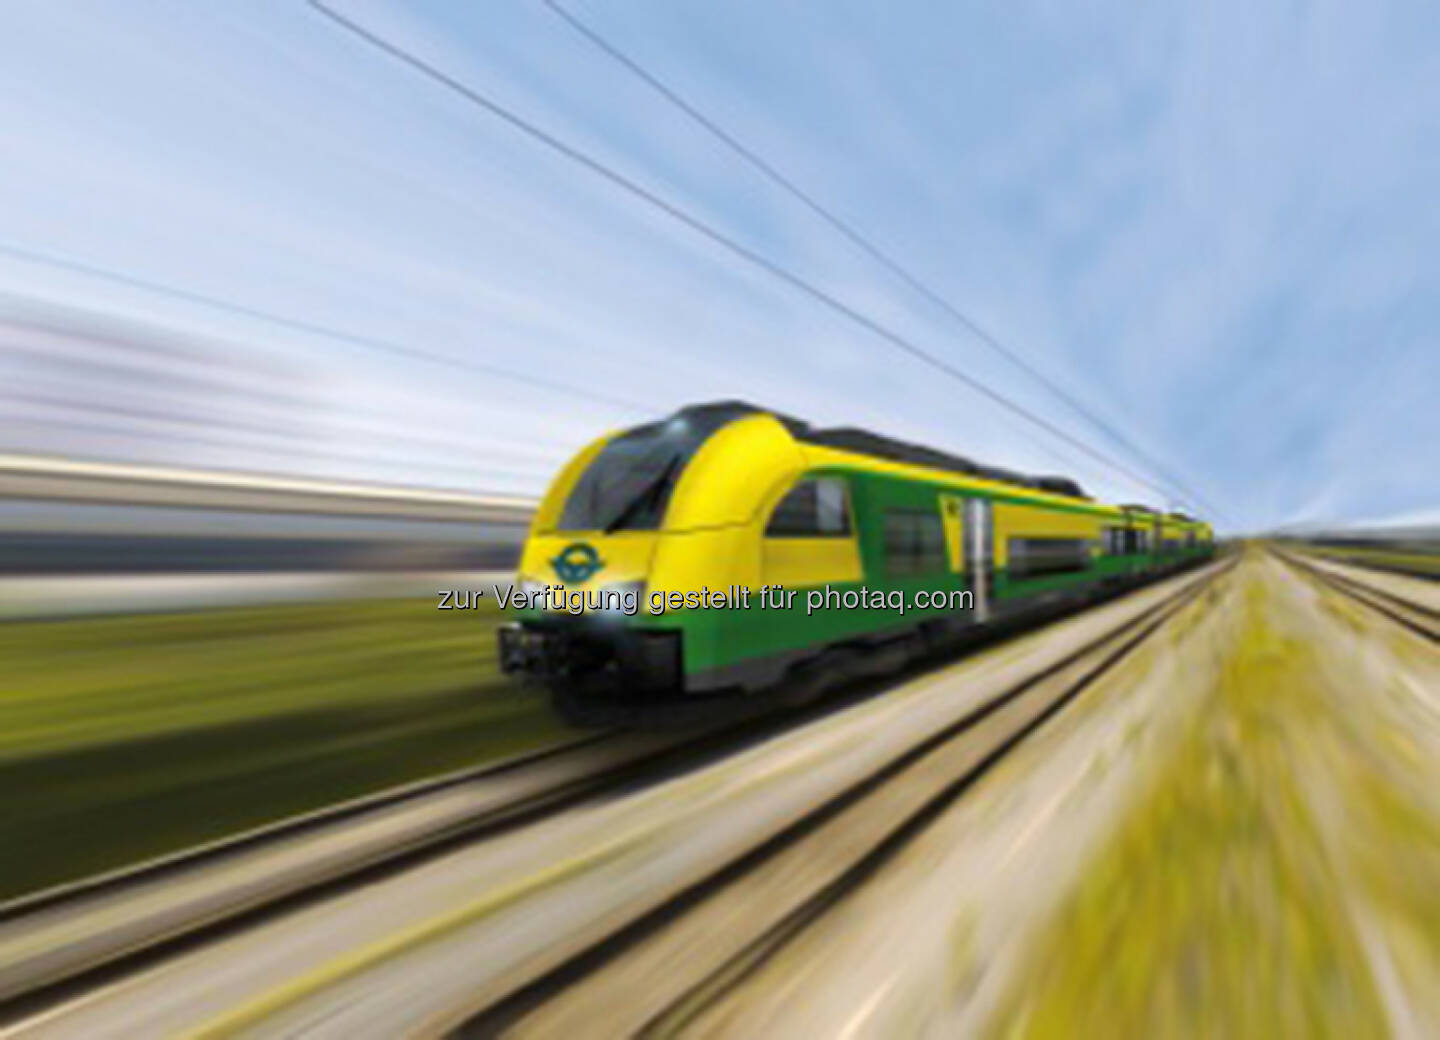 Siemens: Raaberbahn unterzeichnet Vertrag für 5 Desiro ML Regionalzüge - Fahrwerke kommen aus dem Siemens Werk in Graz